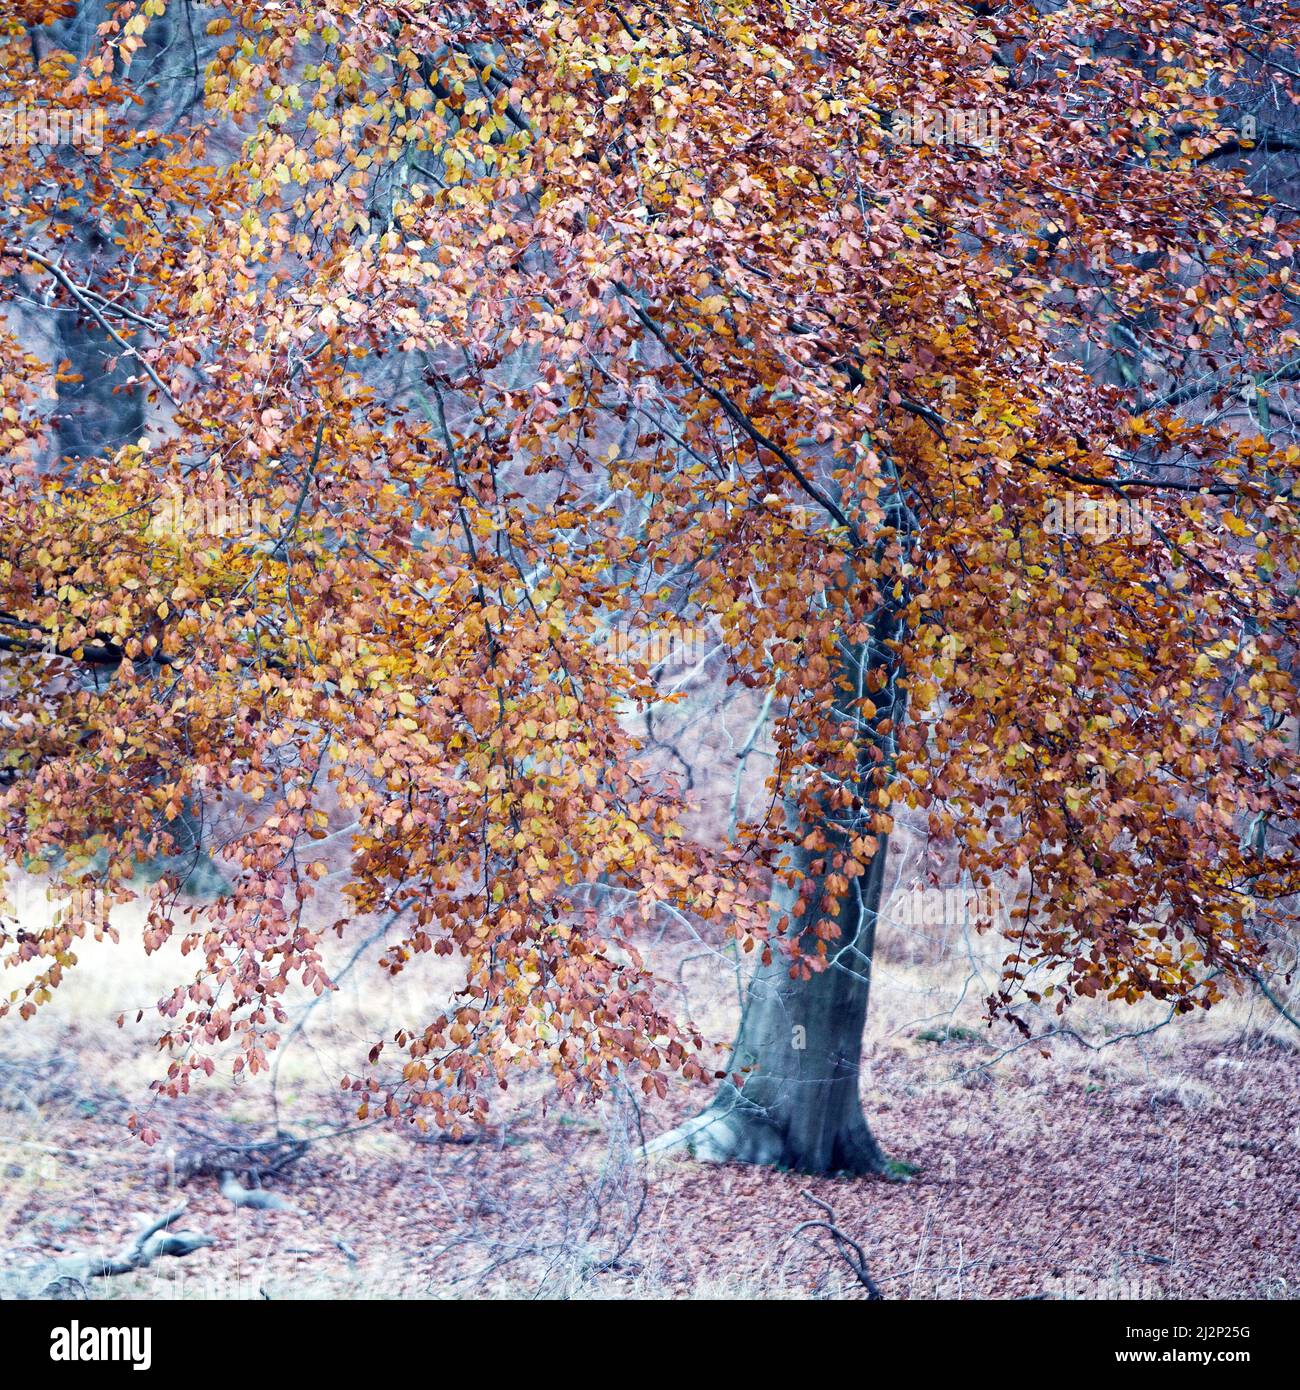 Magnifique feuillage à l'automne d'arbres de Hêtre mûrs sur Cannock Chase une région de beauté naturelle exceptionnelle Staffordshire Angleterre Banque D'Images